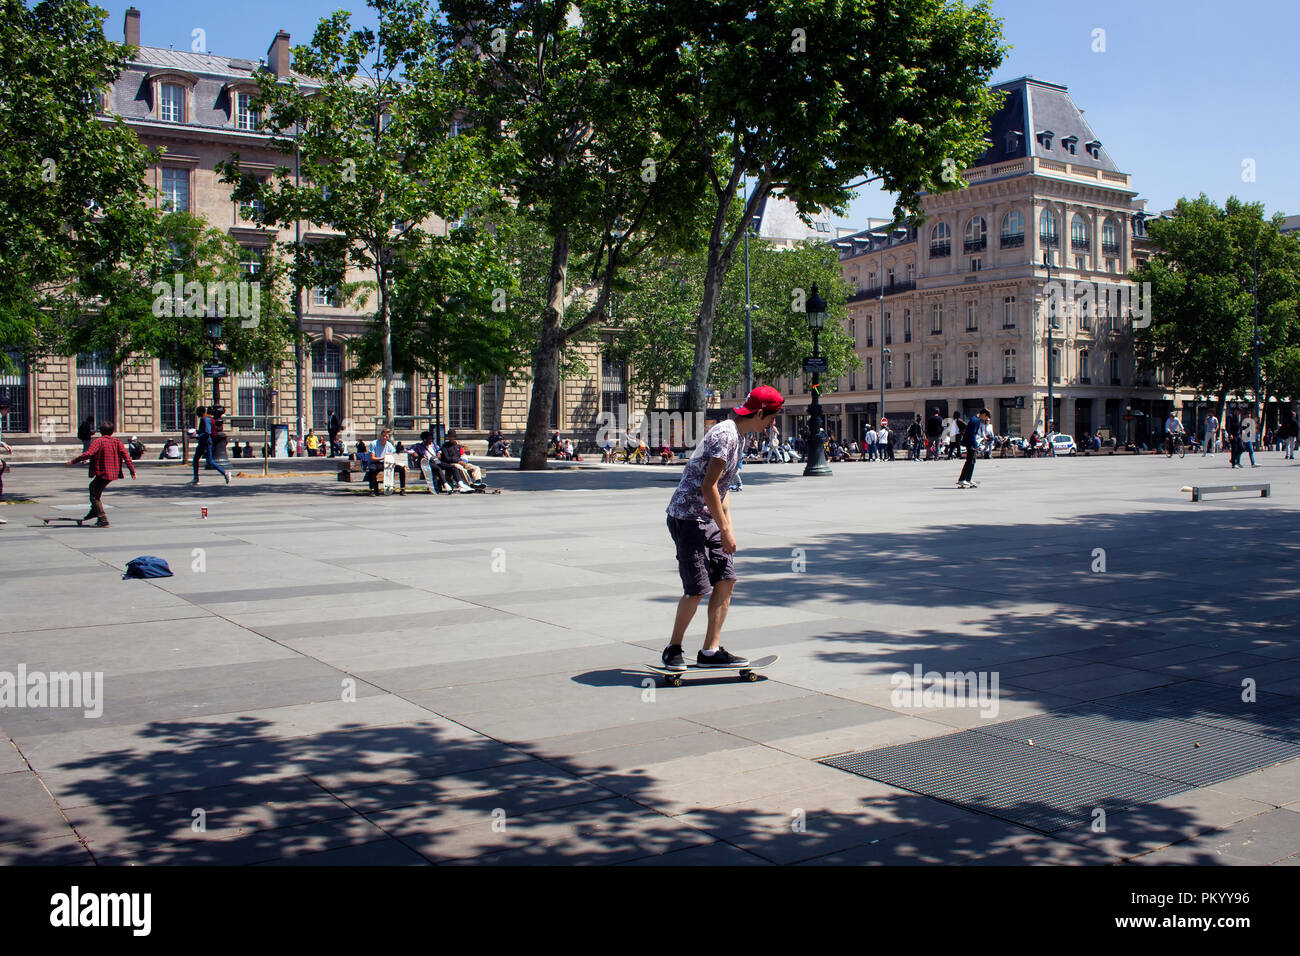 Giovani skate presso la piazza della Repubblica (Place de la Republique Parigi). L'immagine mostra la cultura giovanile della città. Foto Stock